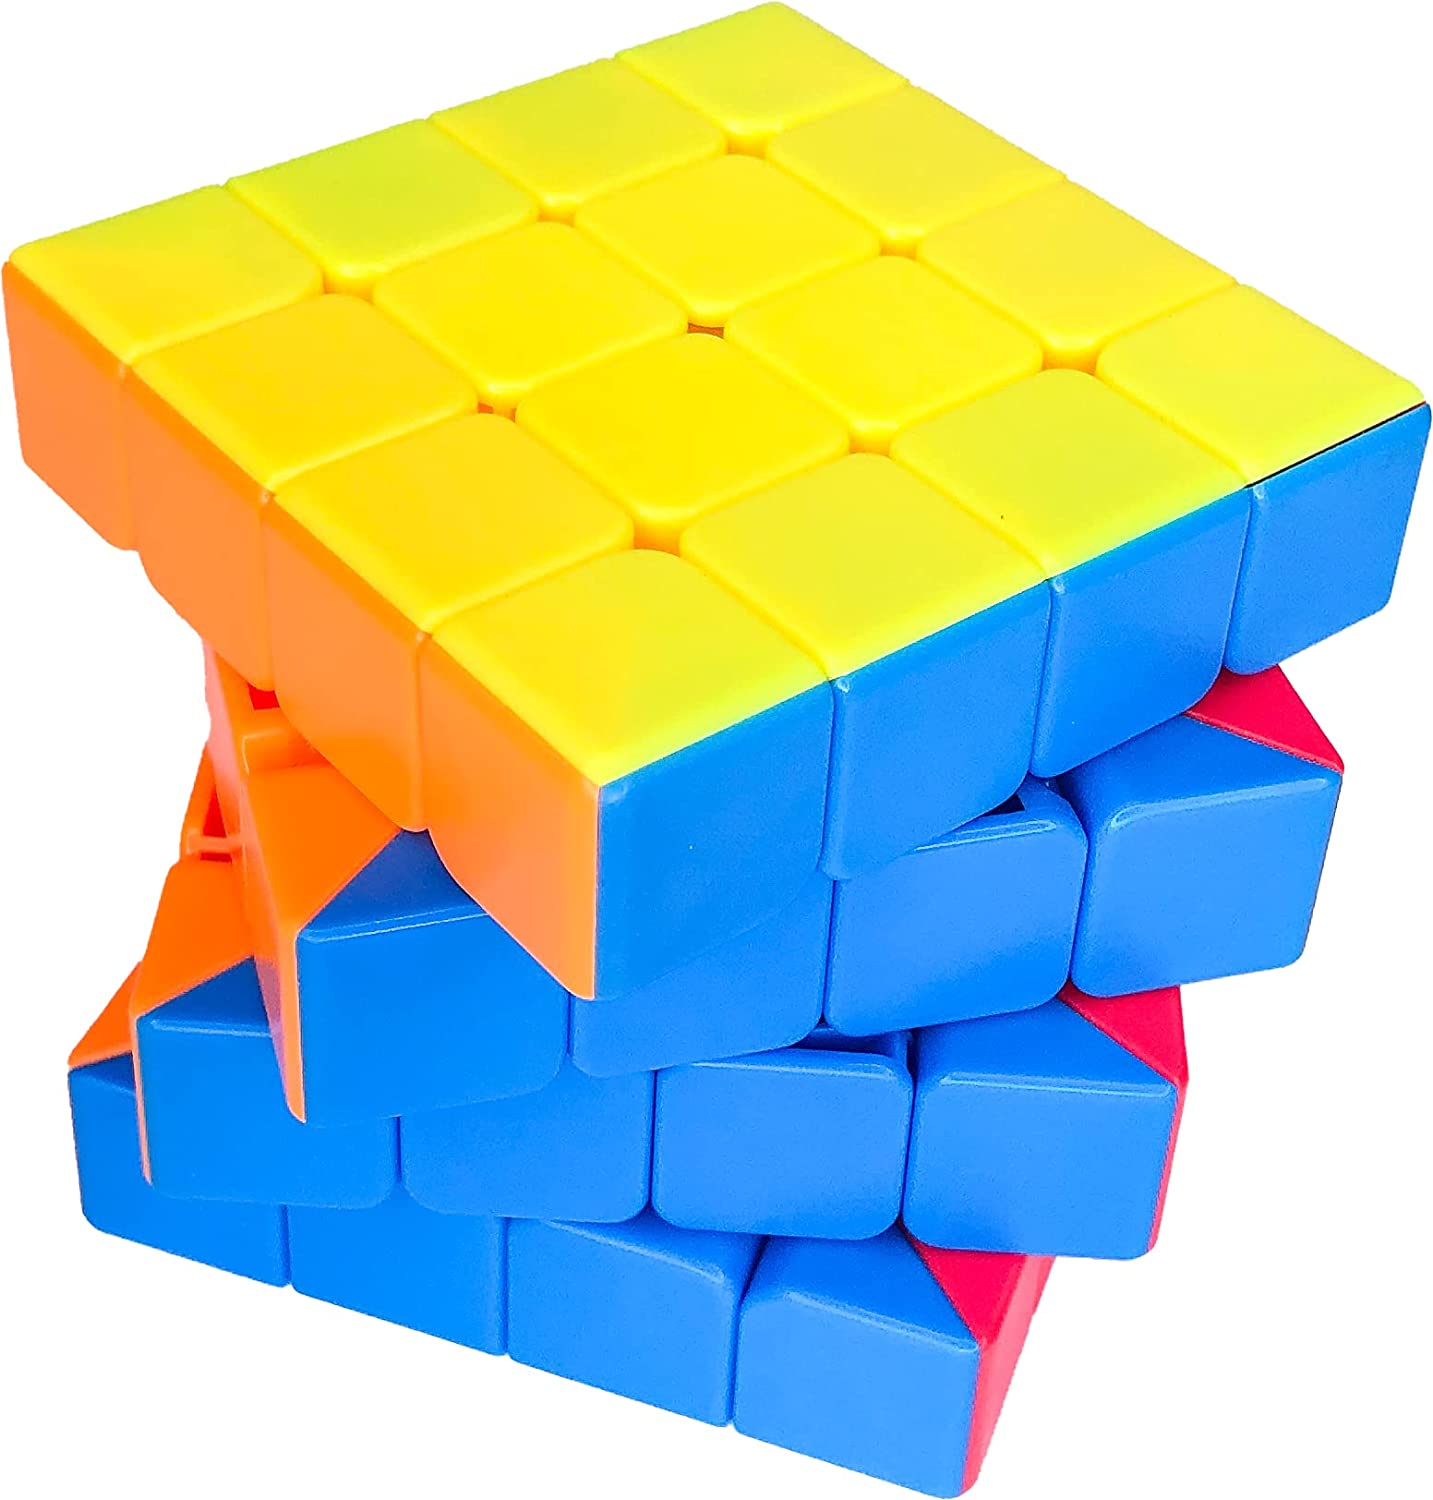 Cubo Magico 4x4 Colorido sem adesivos - Bumerang Brinquedos